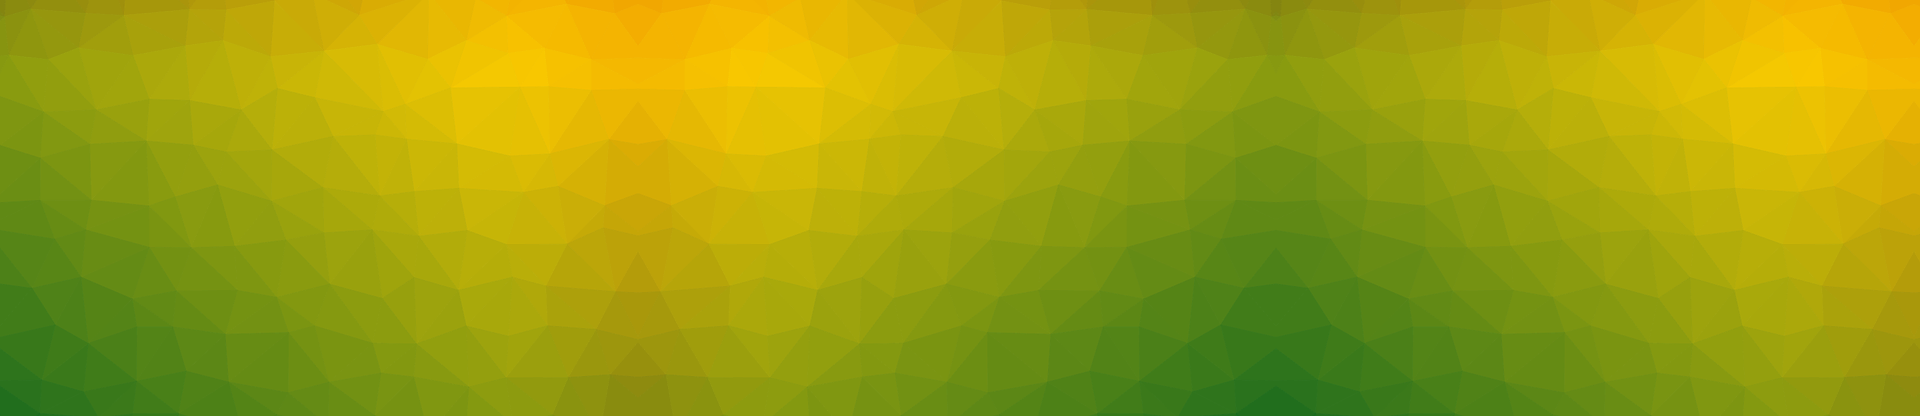 Abstrakt mönster i gult och grönt.